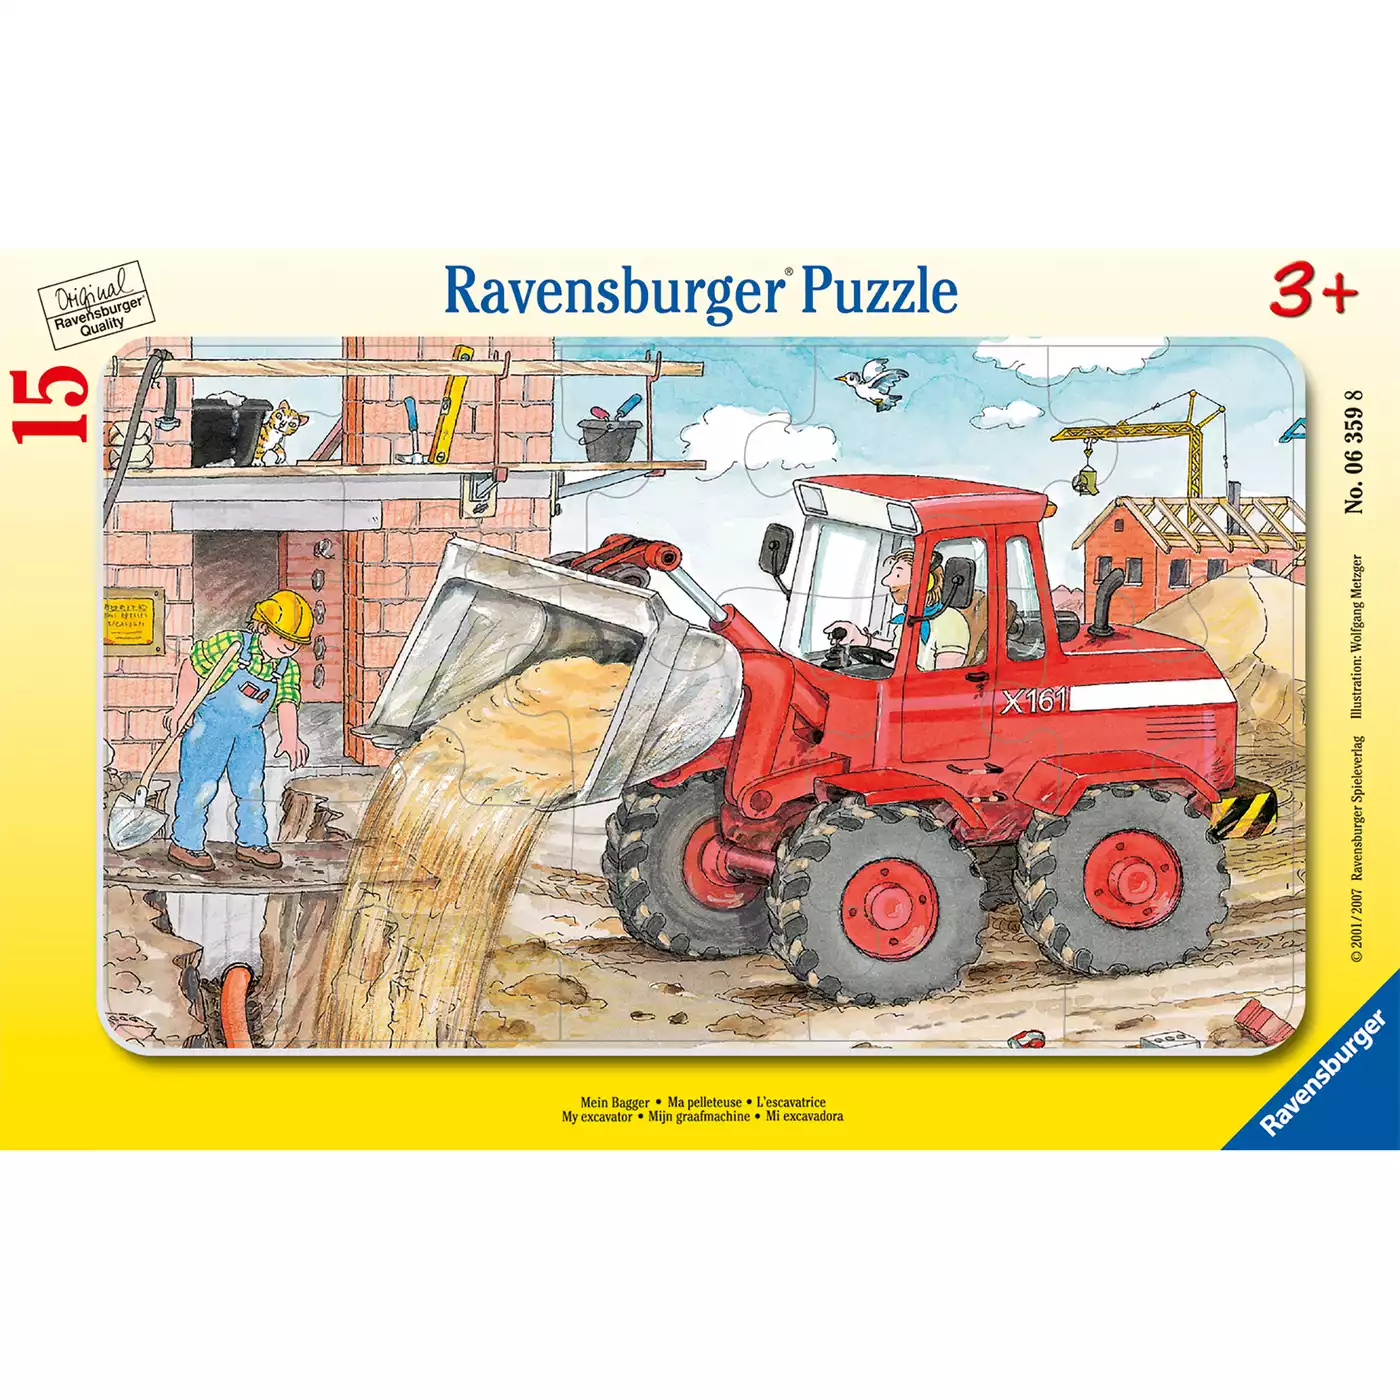 Kinderpuzzle Mein Bagger Ravensburger 2000511219500 3